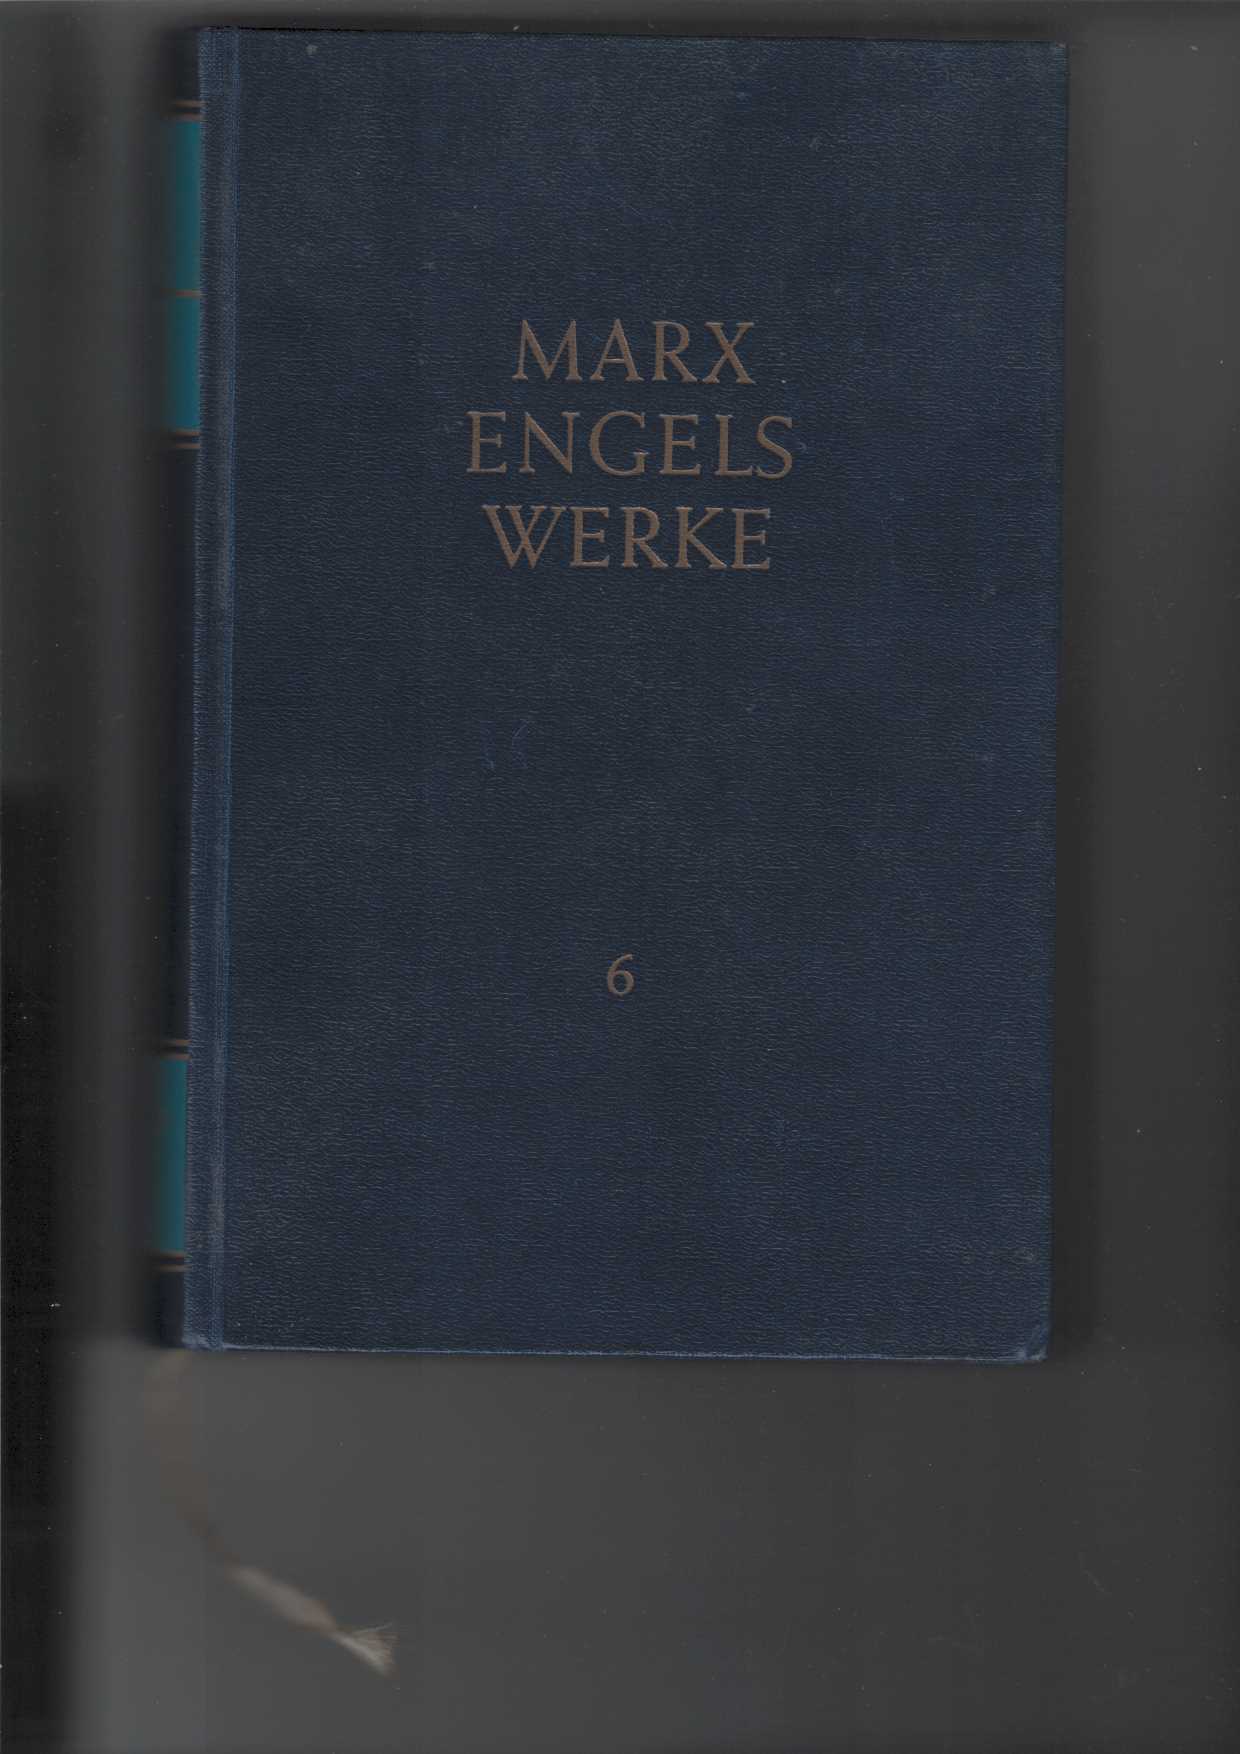 Marx, Karl und Friedrich Engels:  Marx Engels Werke (MEW) : Band 6: November 1848 bis Juli 1849. 